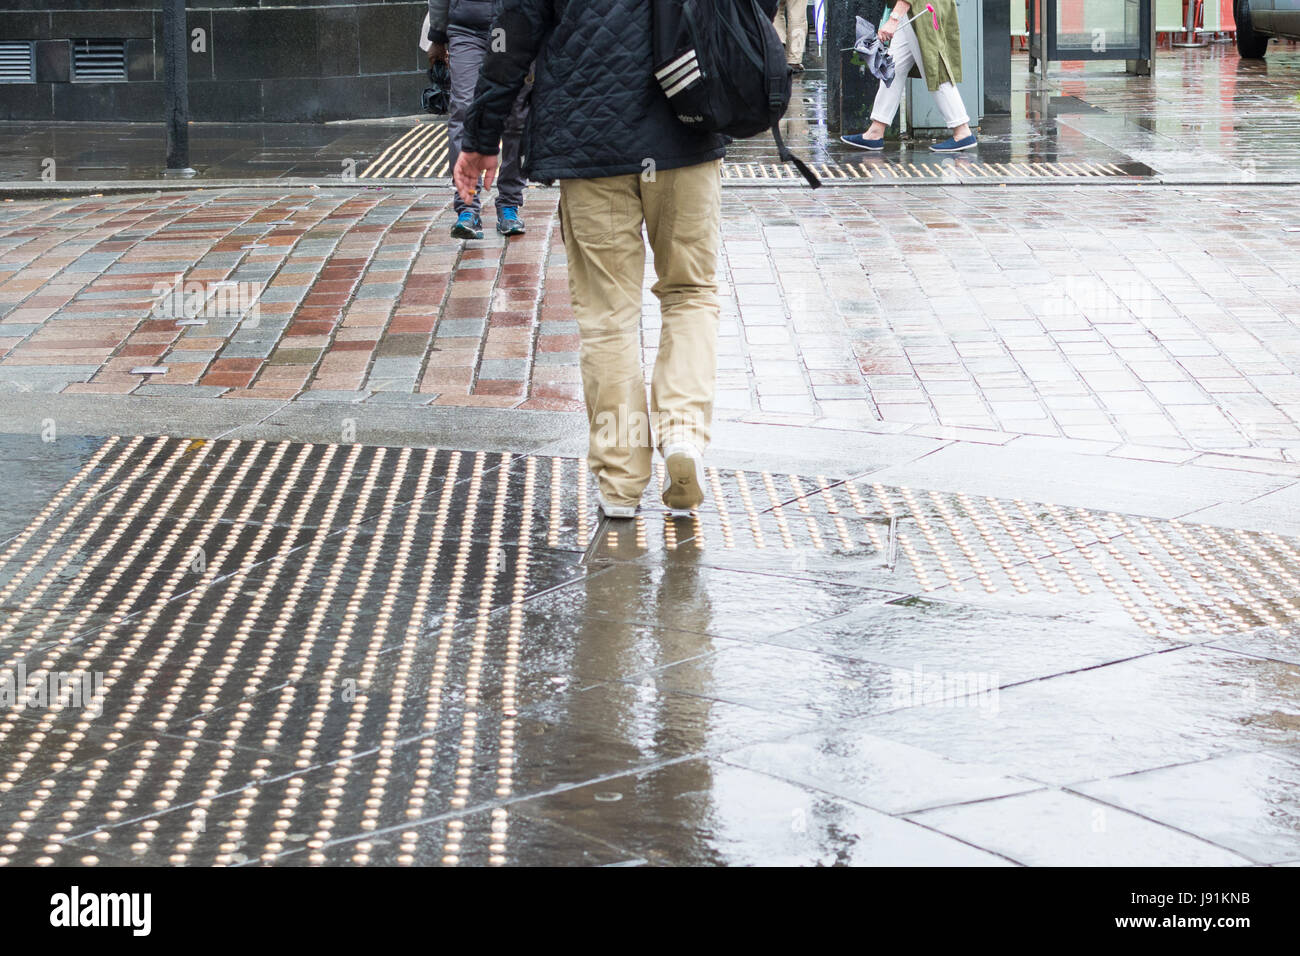 Pavimento táctil espárragos en un cruce peatonal en el centro de la ciudad de Glasgow Foto de stock